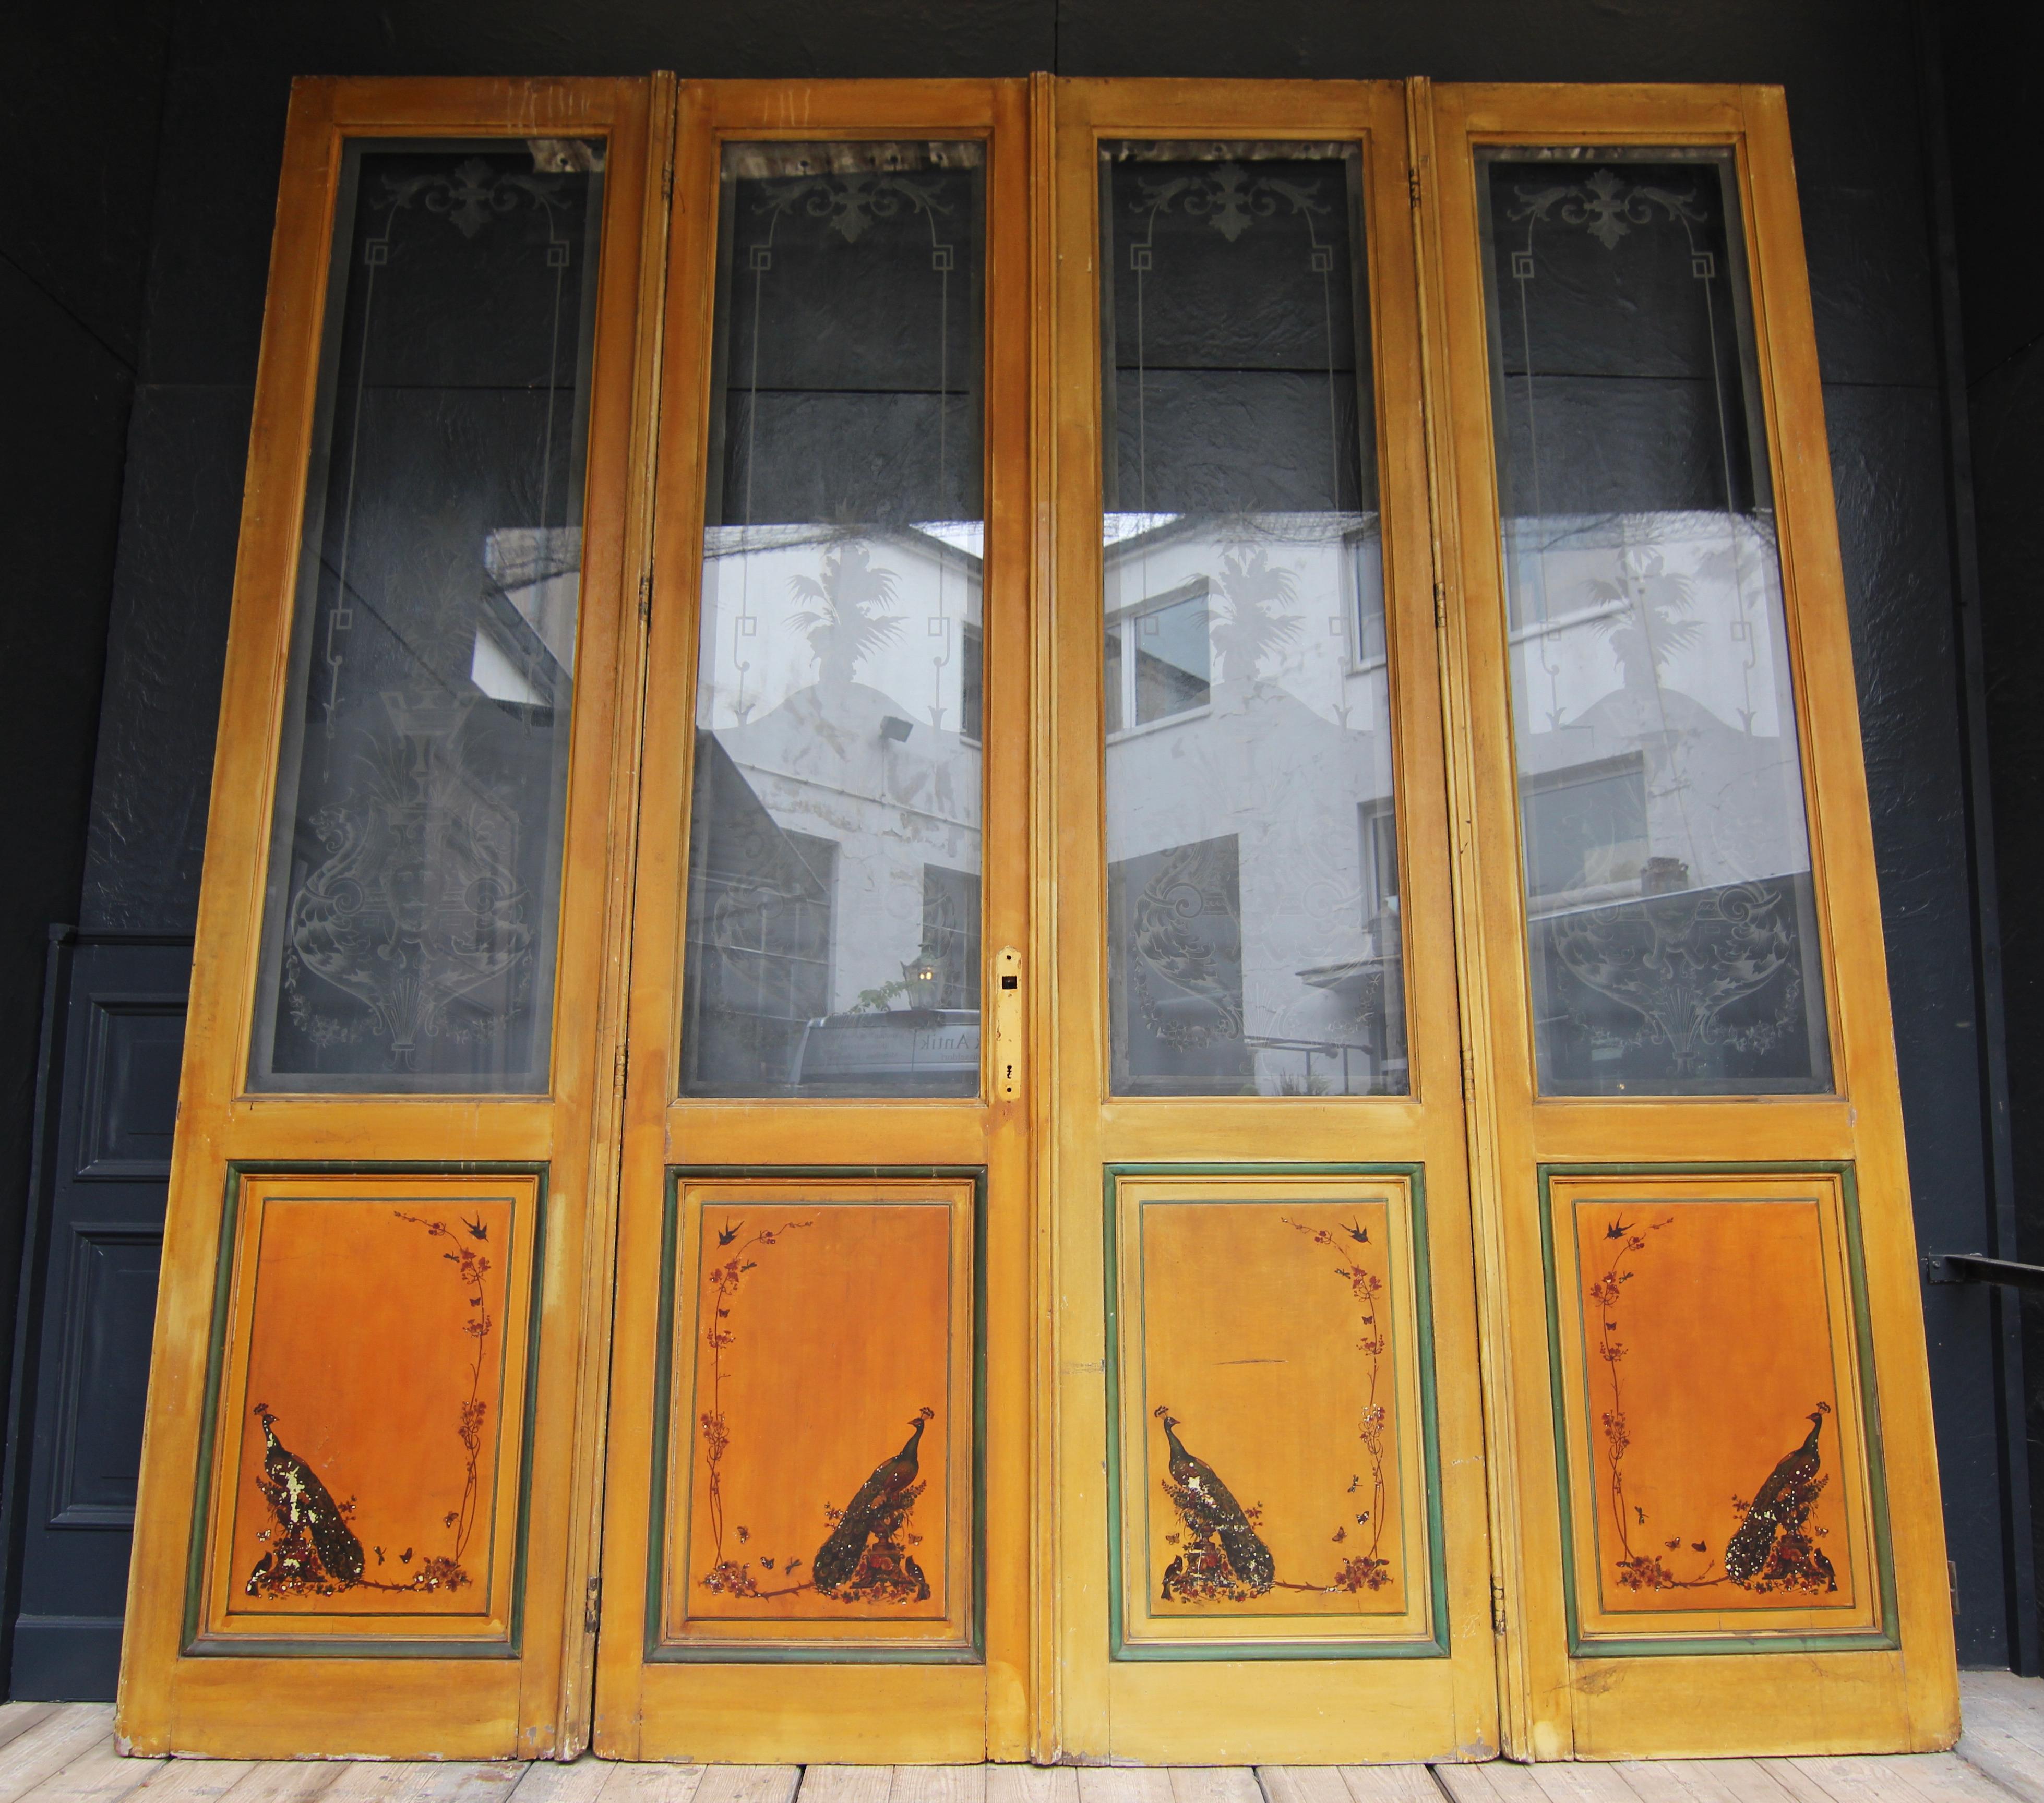 Doppeltür im Jugendstil mit geätzten Glasscheiben und Chinoiserie-Malerei. Belgien, um 1910.

Vierteilige Garnitur, bestehend aus einer Doppeltür, die von 2 Seitenelementen flankiert wird. Jeweils 2/3 verglast mit geätzten